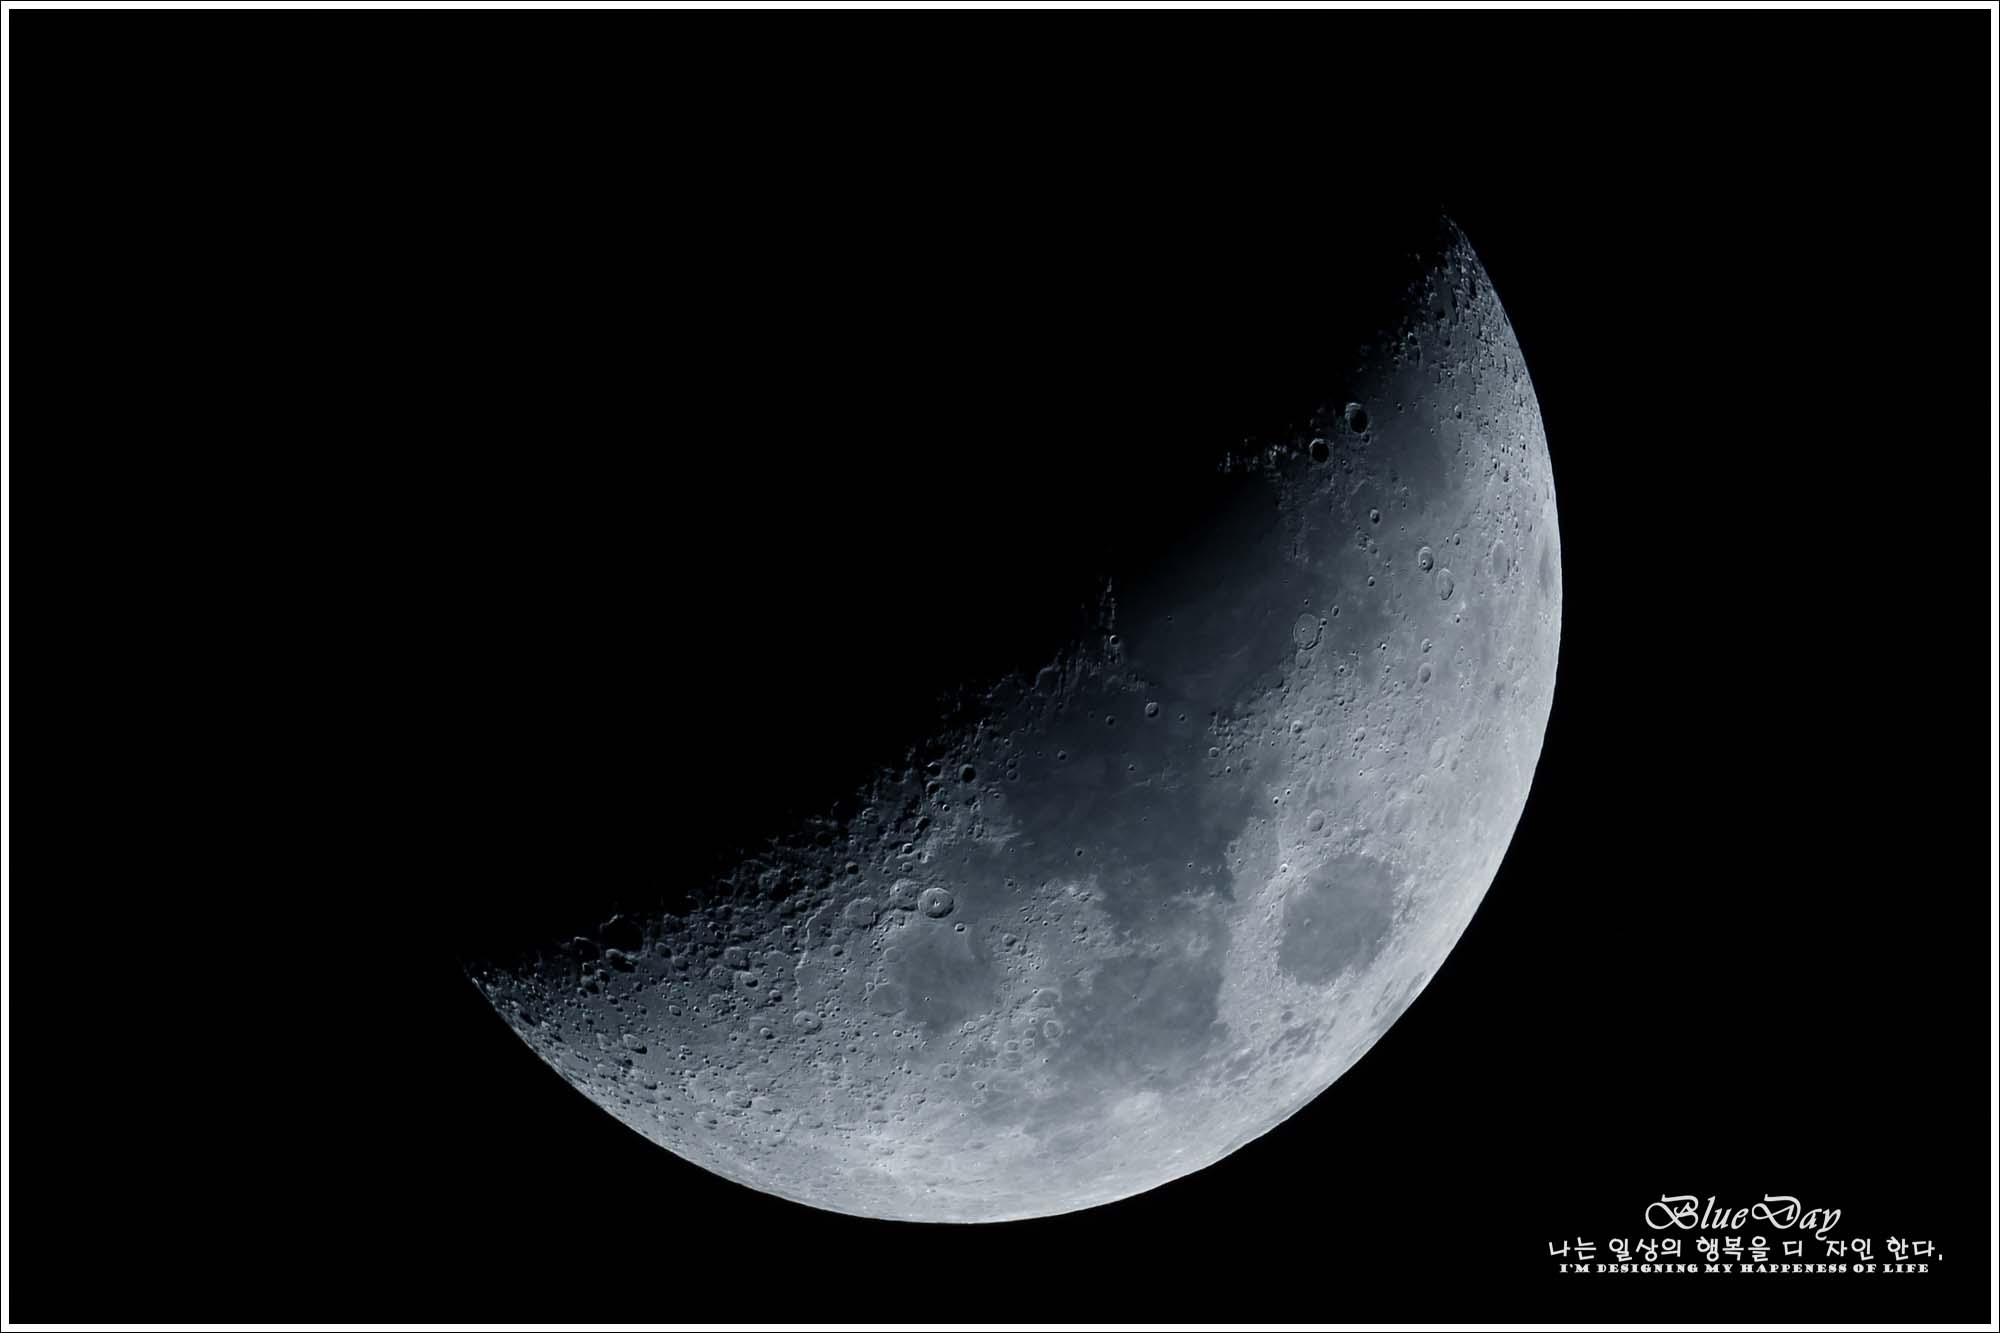 2014년 4월 6일 좌구산 천문대 달 사진 촬영했어요.